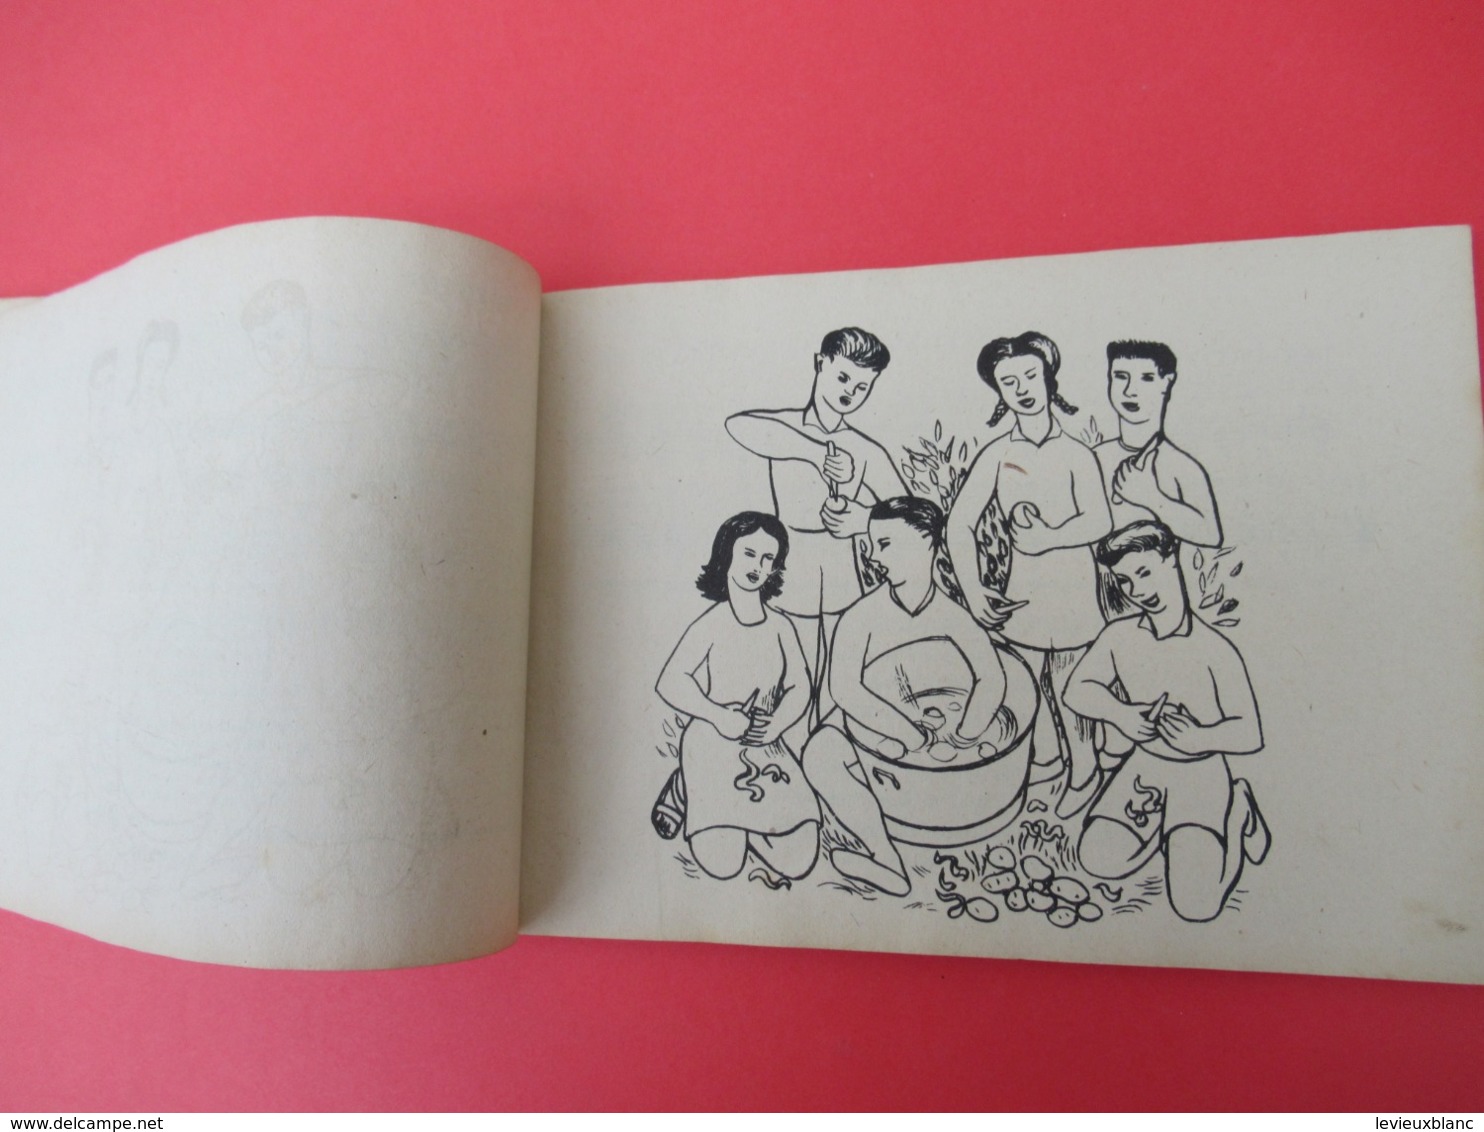 Livre de Chants / Ensemble / un chansonnier pour les colonies de vacancesWilliam /Ed du Scarabée//1946          PART274